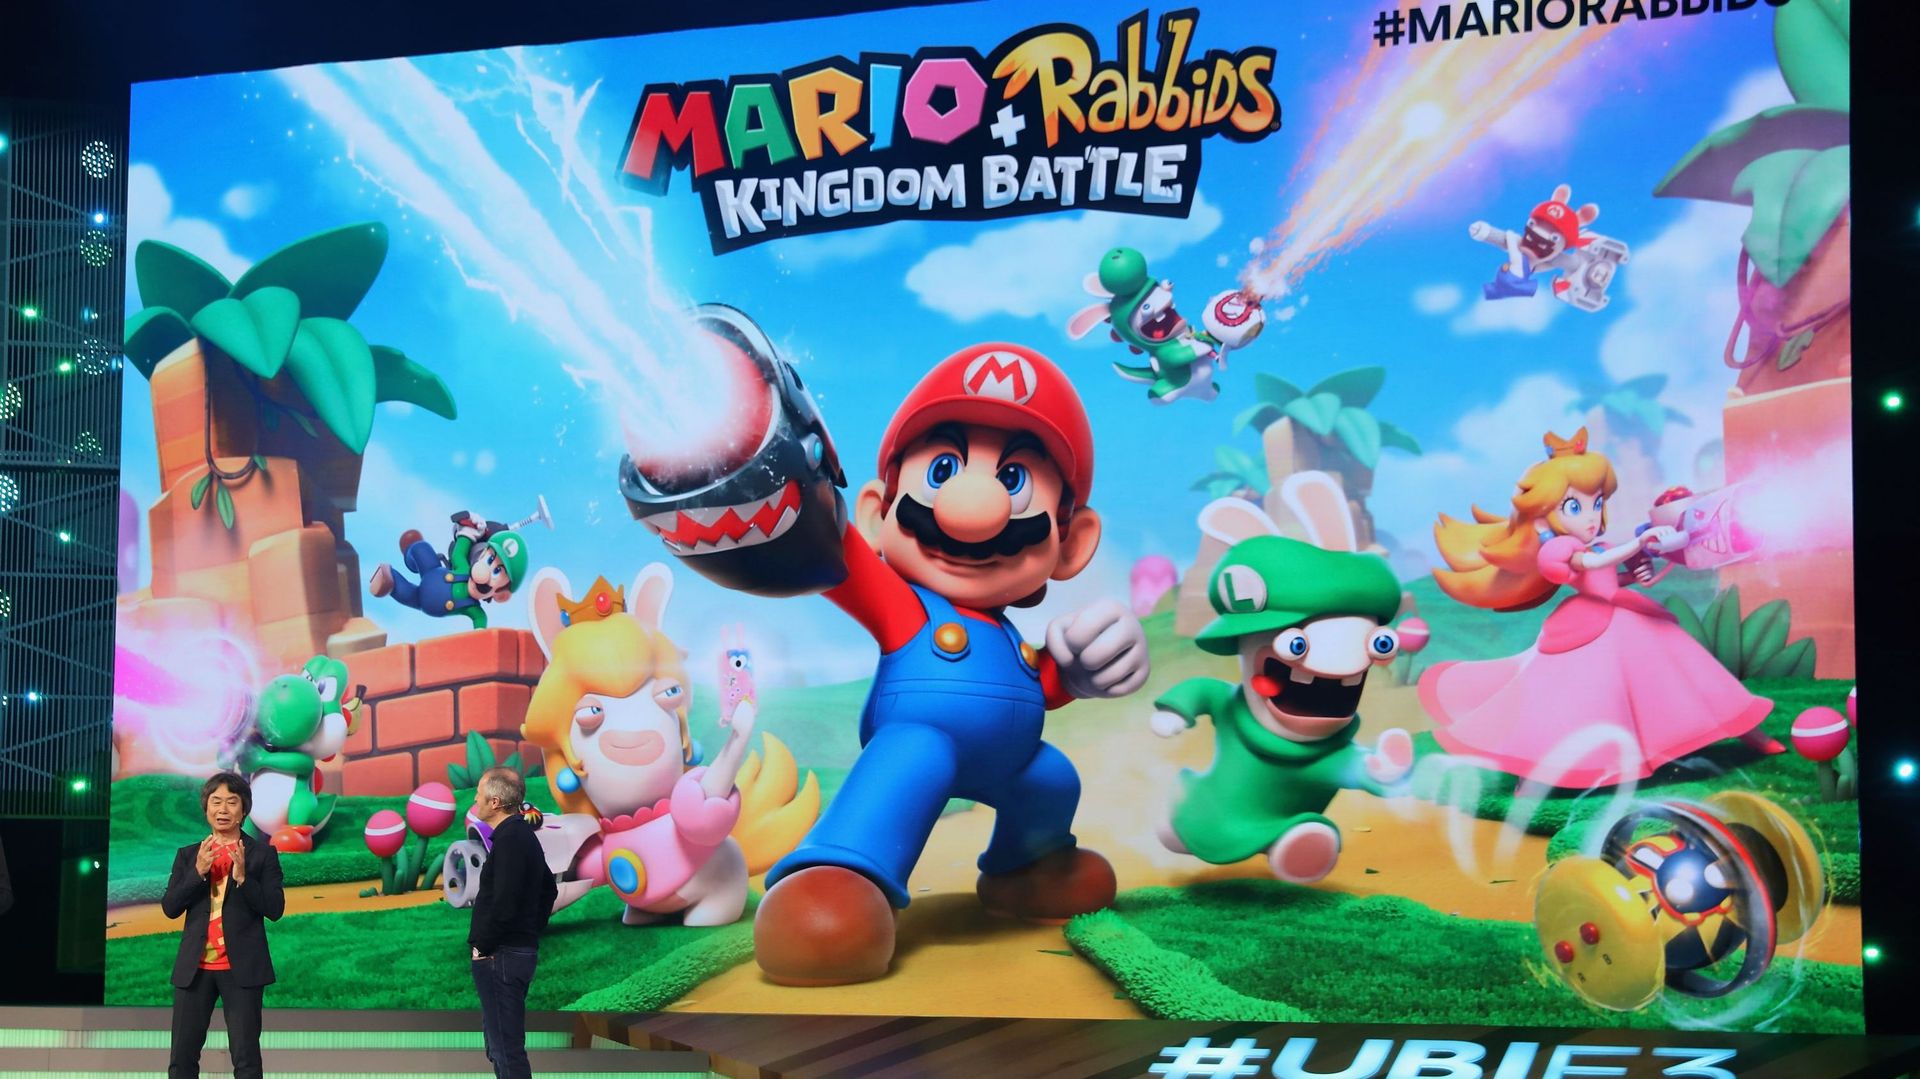 Shigeru Miyamoto, producteur chez Nintendo, et Yves Guillemot, co-fondateur d'Ubisoft, présentent "Mario Rabbids Kingdom Battle" sur la scène de l'E3, à Los Angeles.